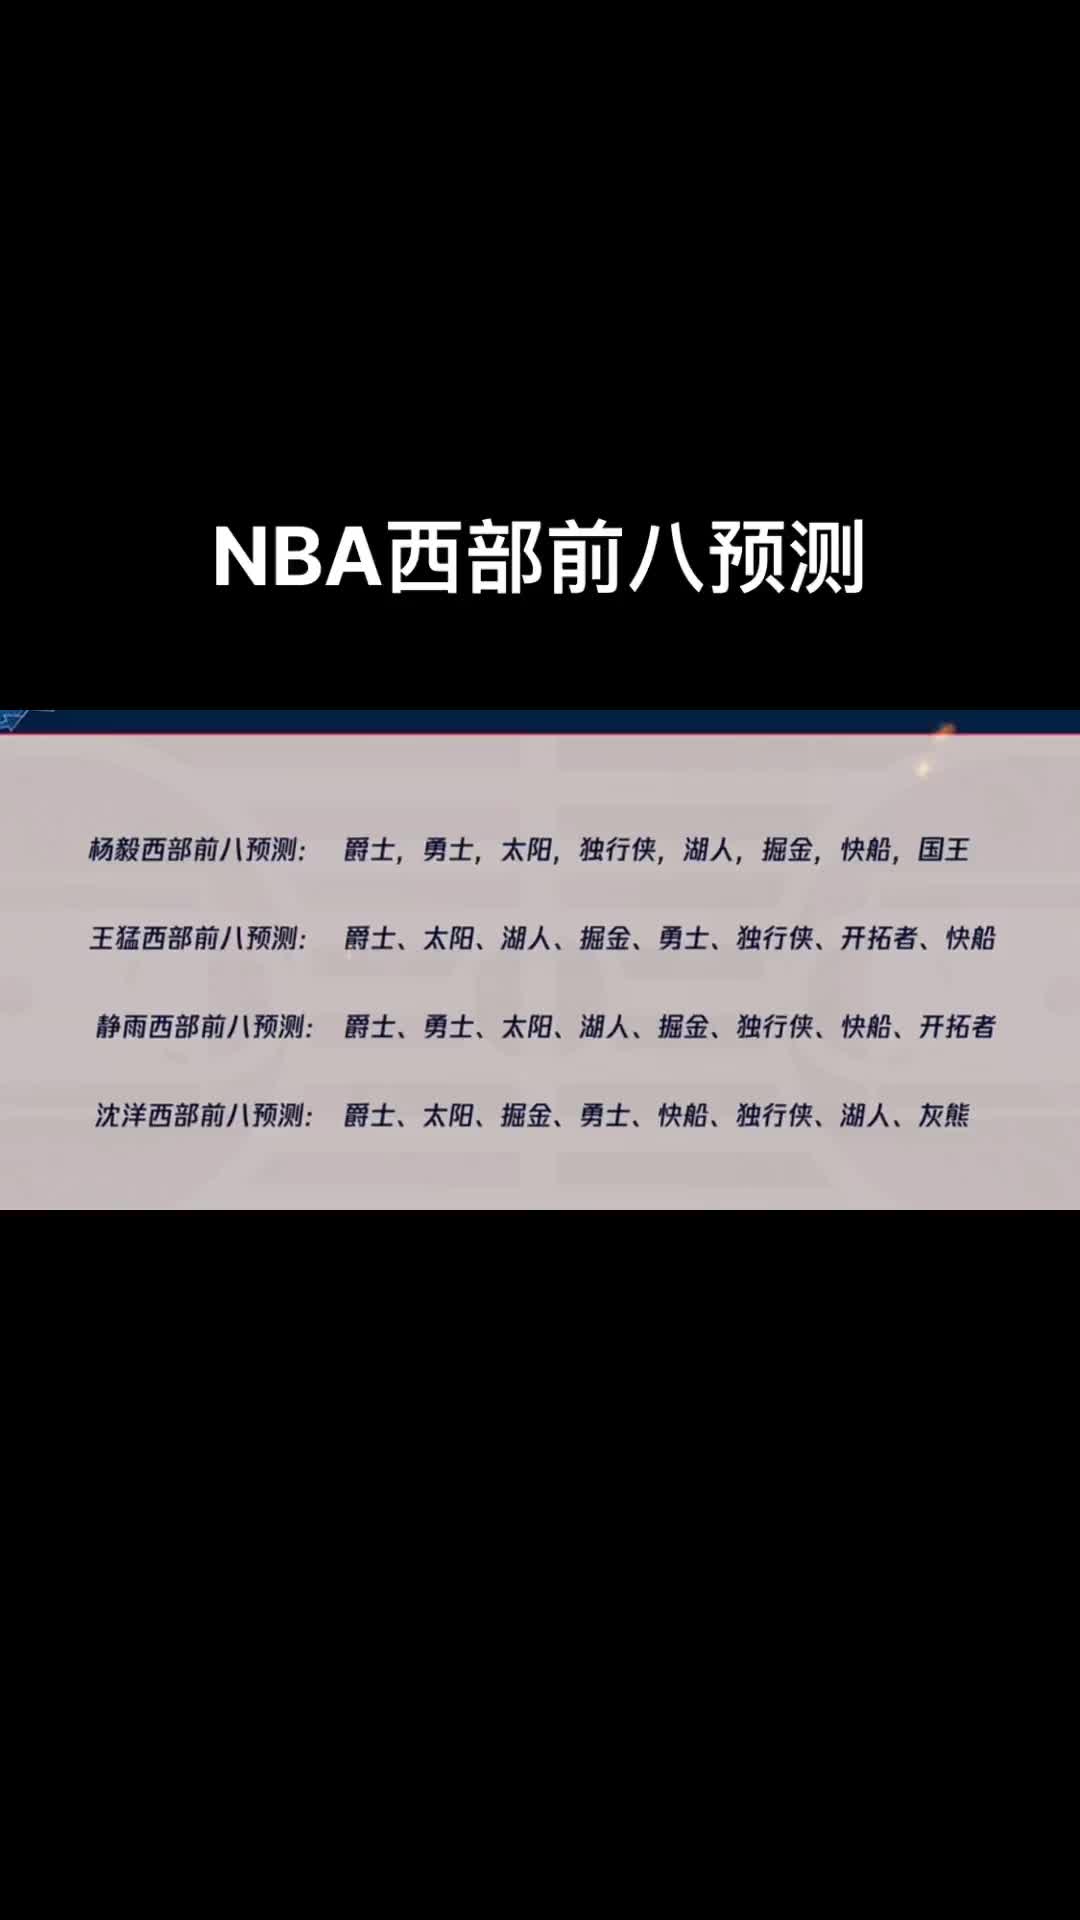 你同意谁的观点呢？杨毅等媒体人预测新赛季西部前八排名